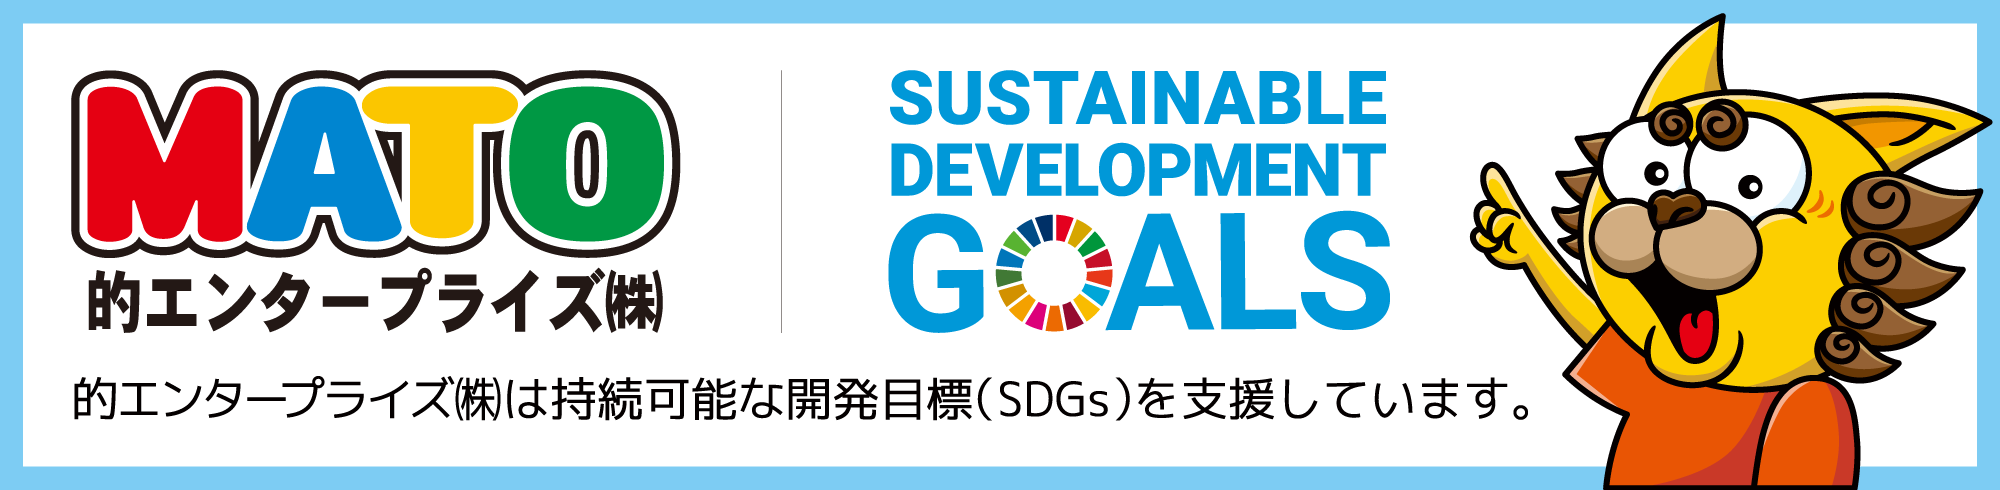 SDGsのトップバナー